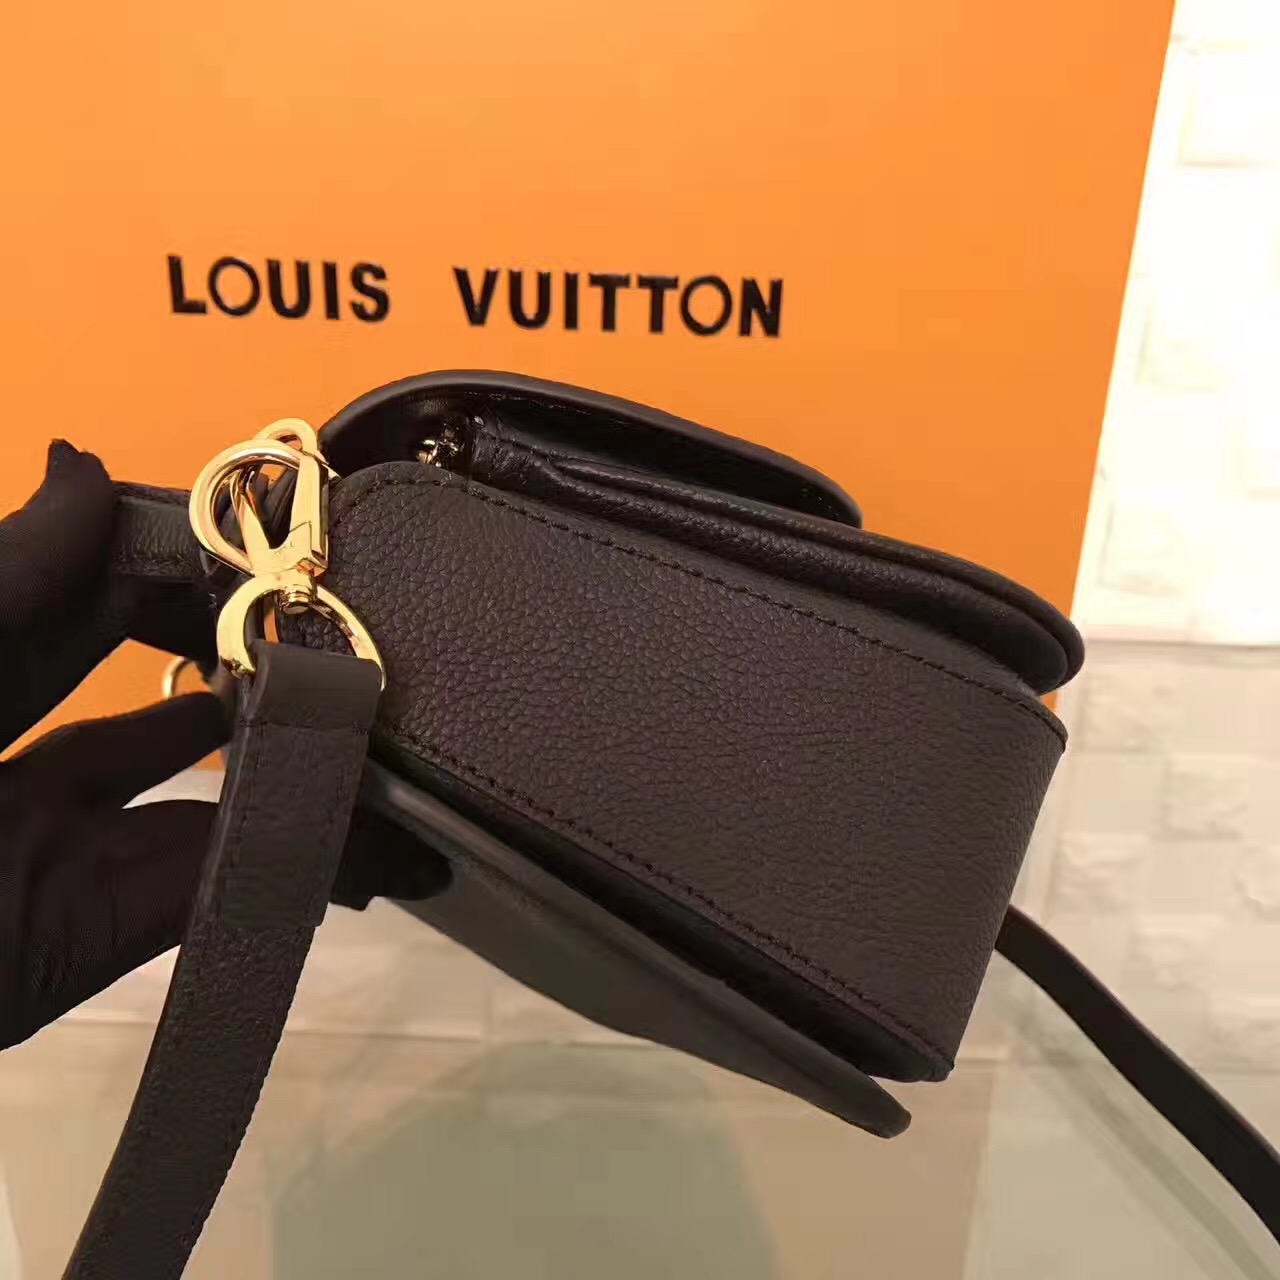 LV Louis Vuitton black leather shoulder handbags